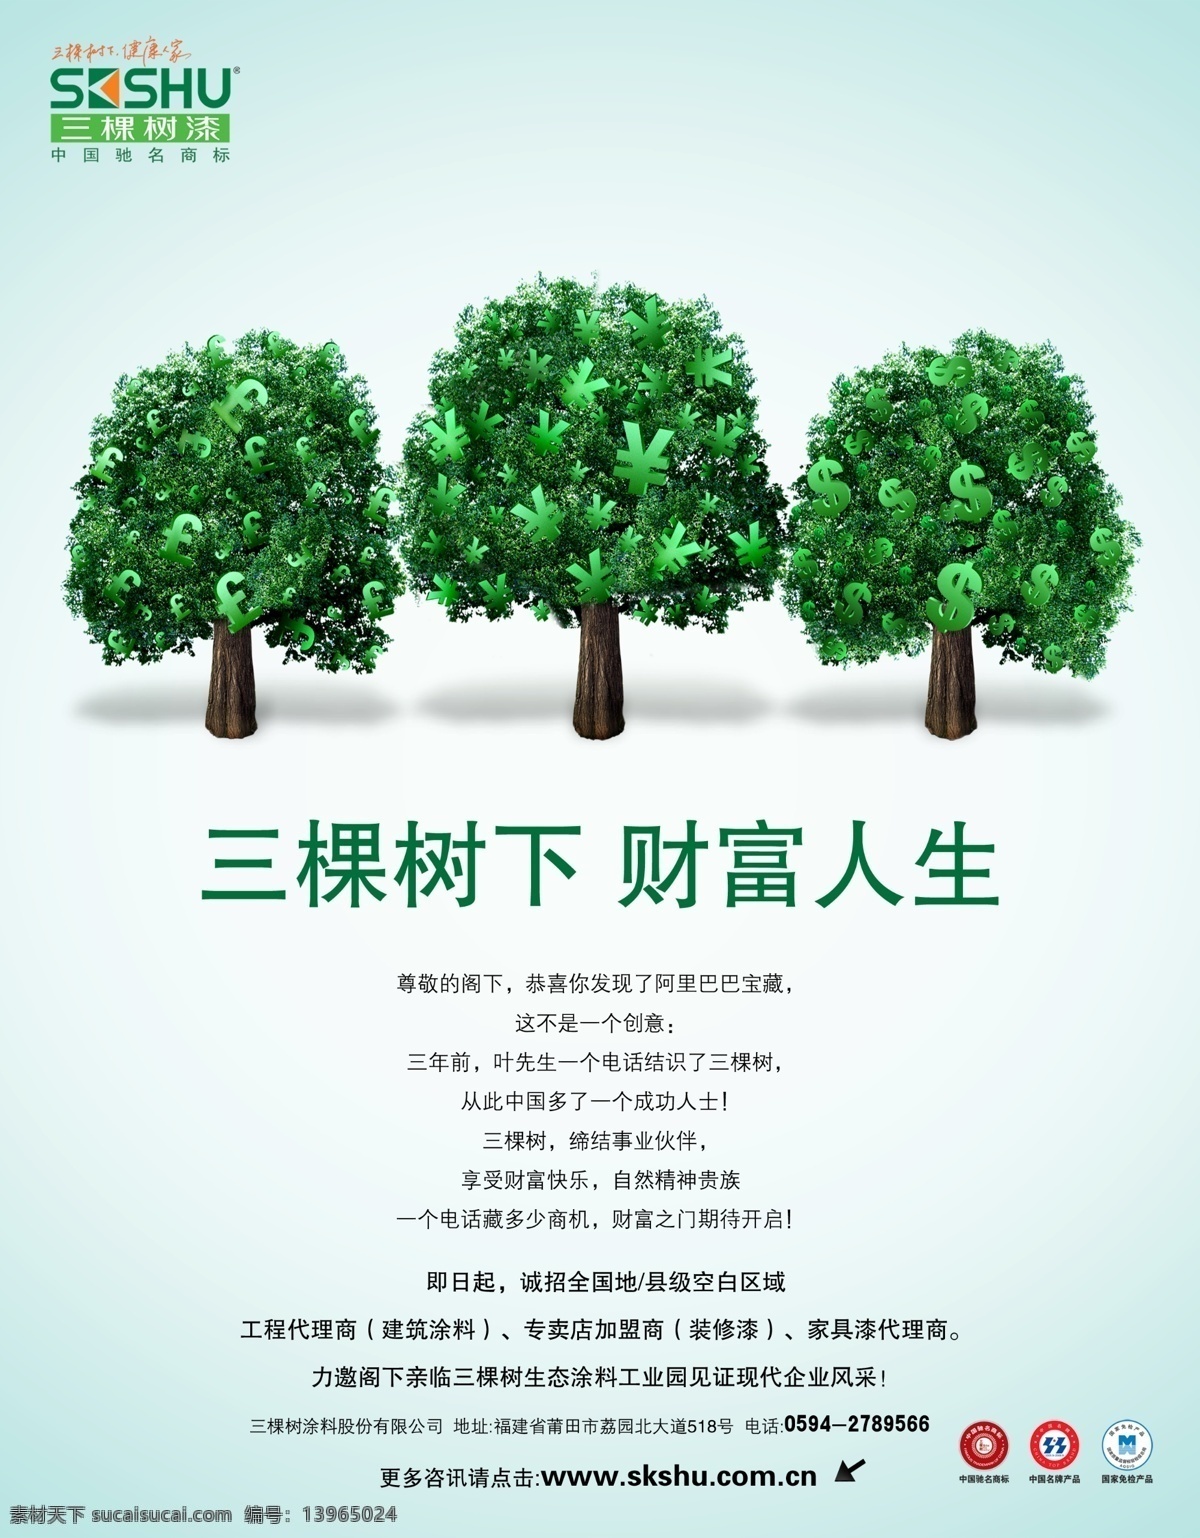 三棵树 漆 财富 人生 广告宣传 三棵树漆 创意 品质生活 绿色财富 代理商 装修漆 健康人生 品牌广告 海报图片 分层素材 商标 psd素材 红色